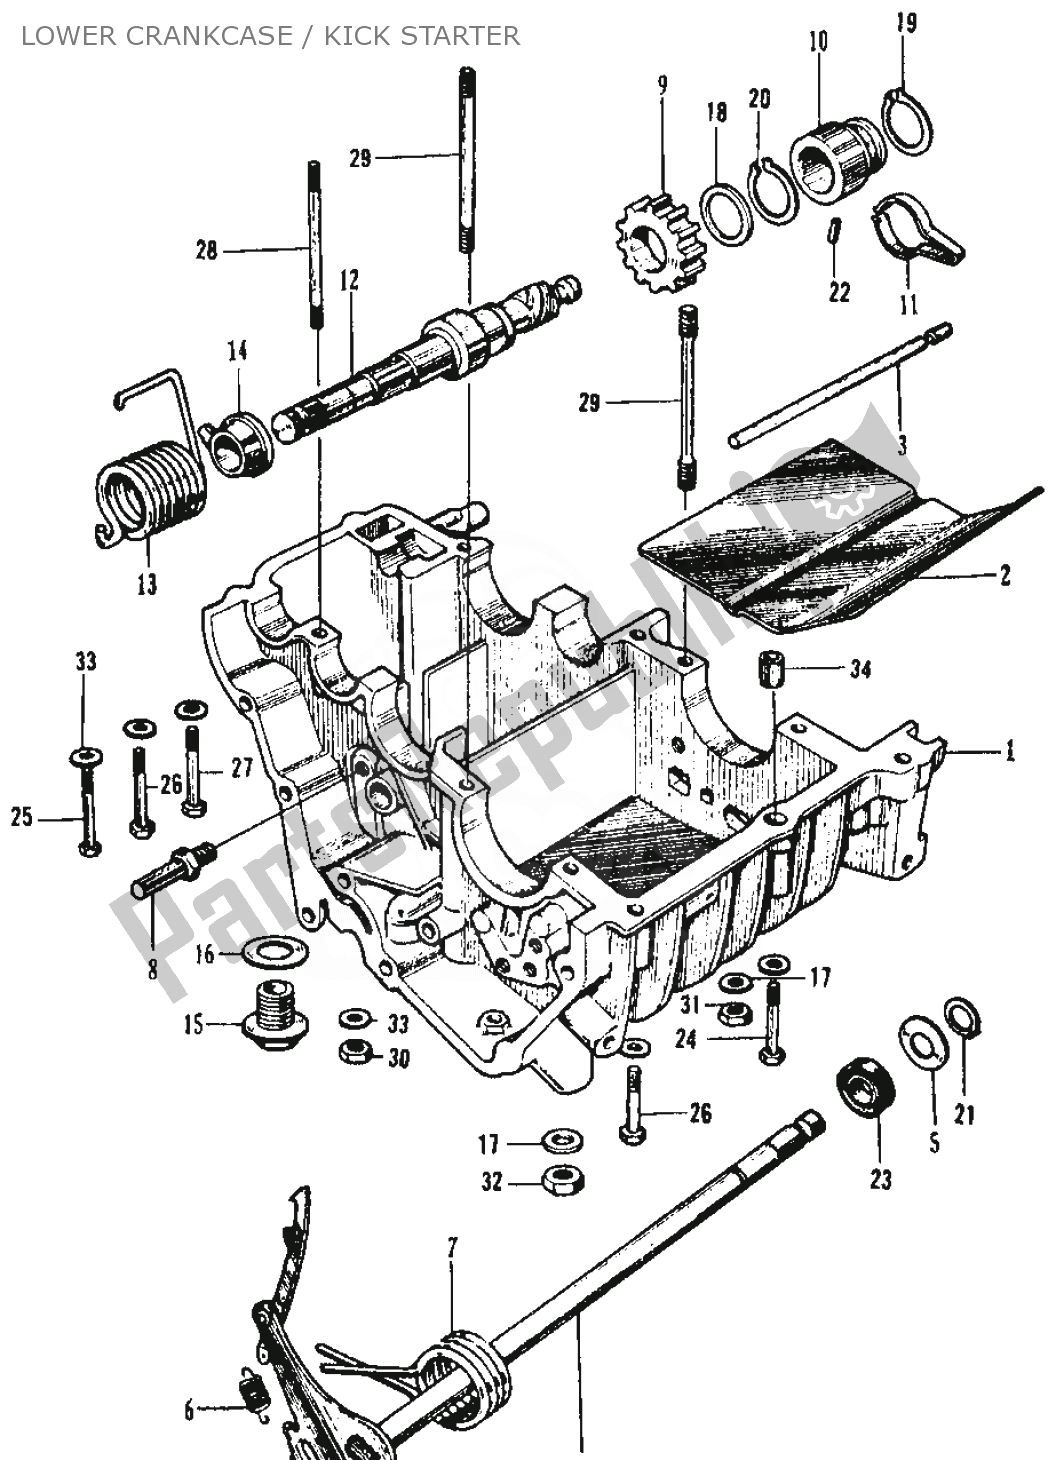 Alle onderdelen voor de Lower Crankcase / Kick Starter van de Honda SS 125 1967